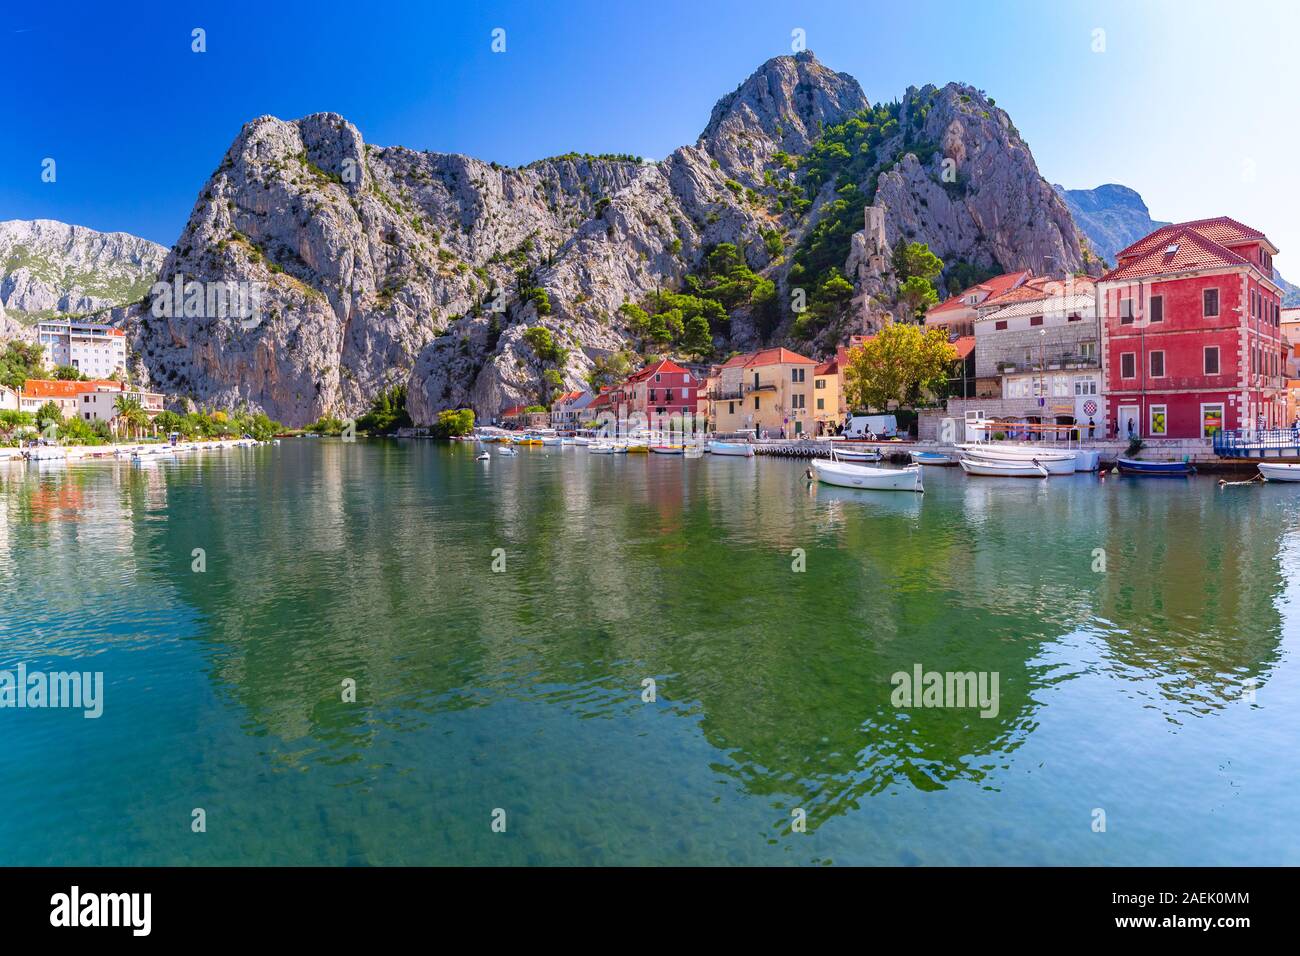 Belle vue ensoleillée de la rivière Cetina, des montagnes et de la vieille ville de Dubrovnik, site touristique très populaire en Croatie Banque D'Images